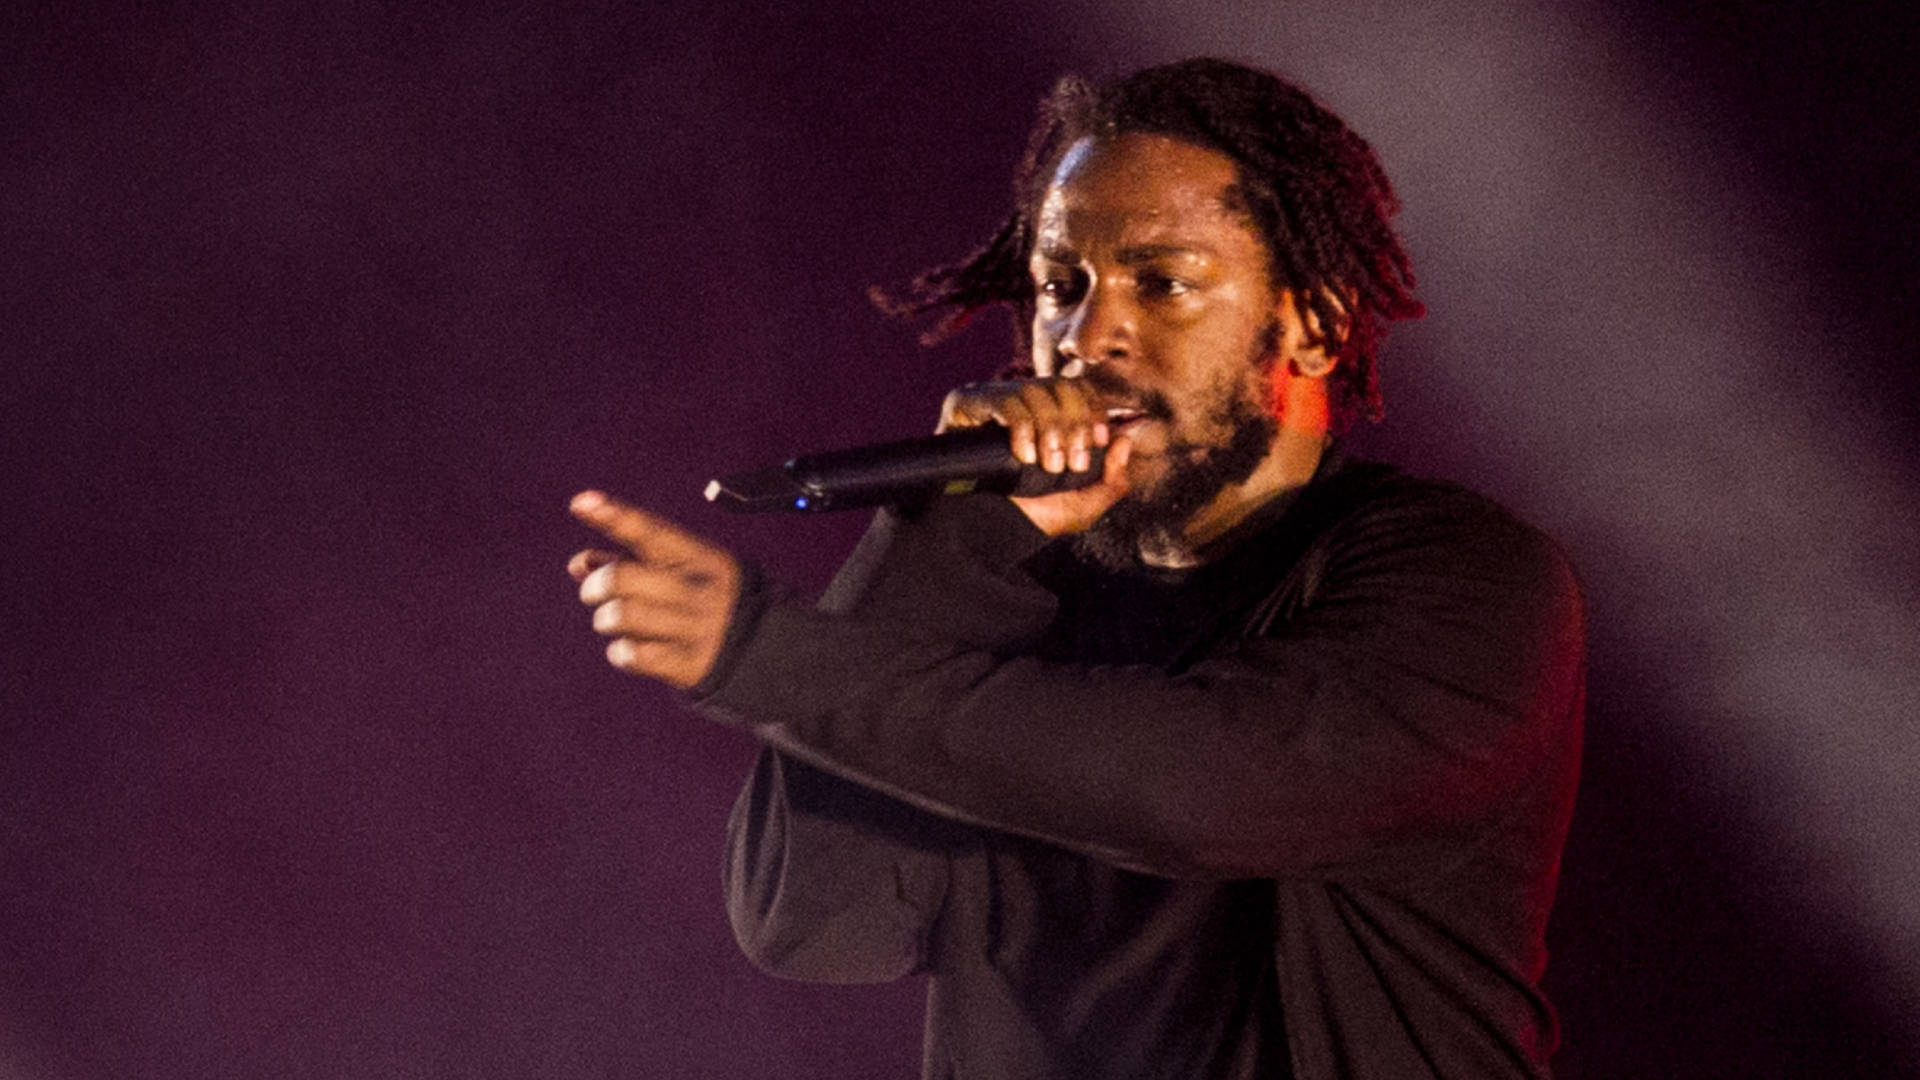 90s Rapper Kendrick Lamar